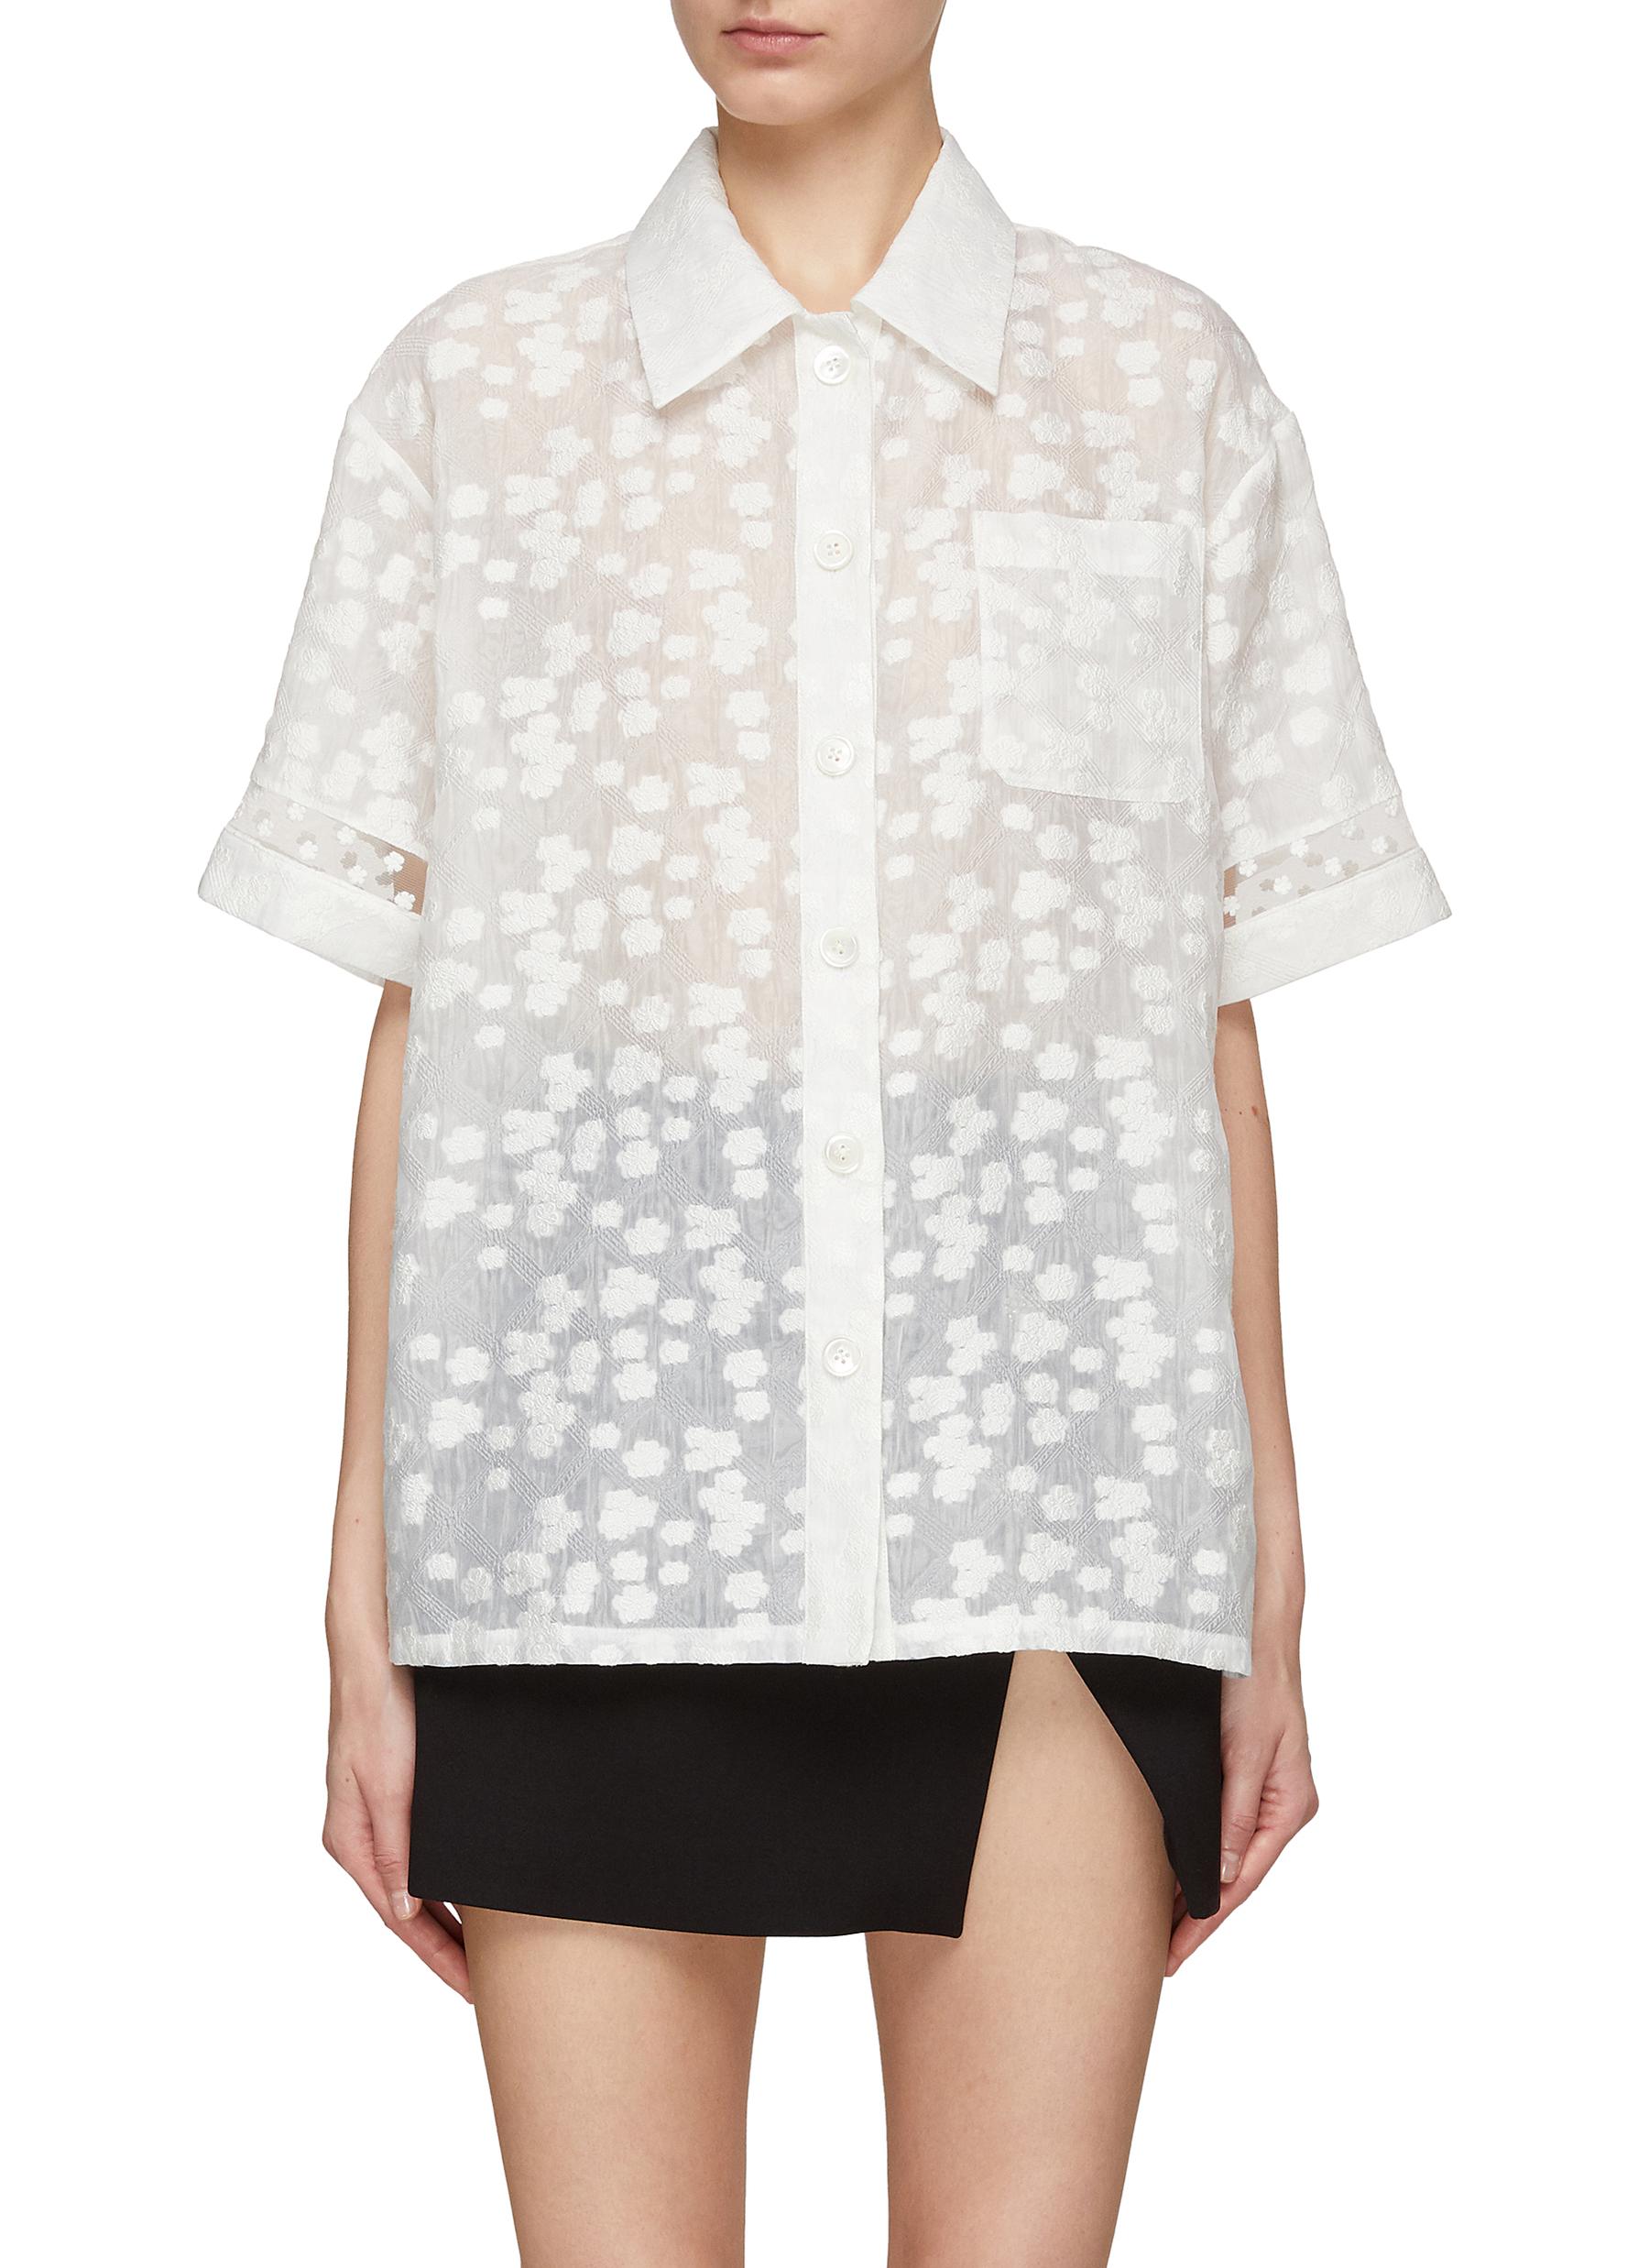 MING MA Floral Jacquard Organza Short Sleeve Shirt